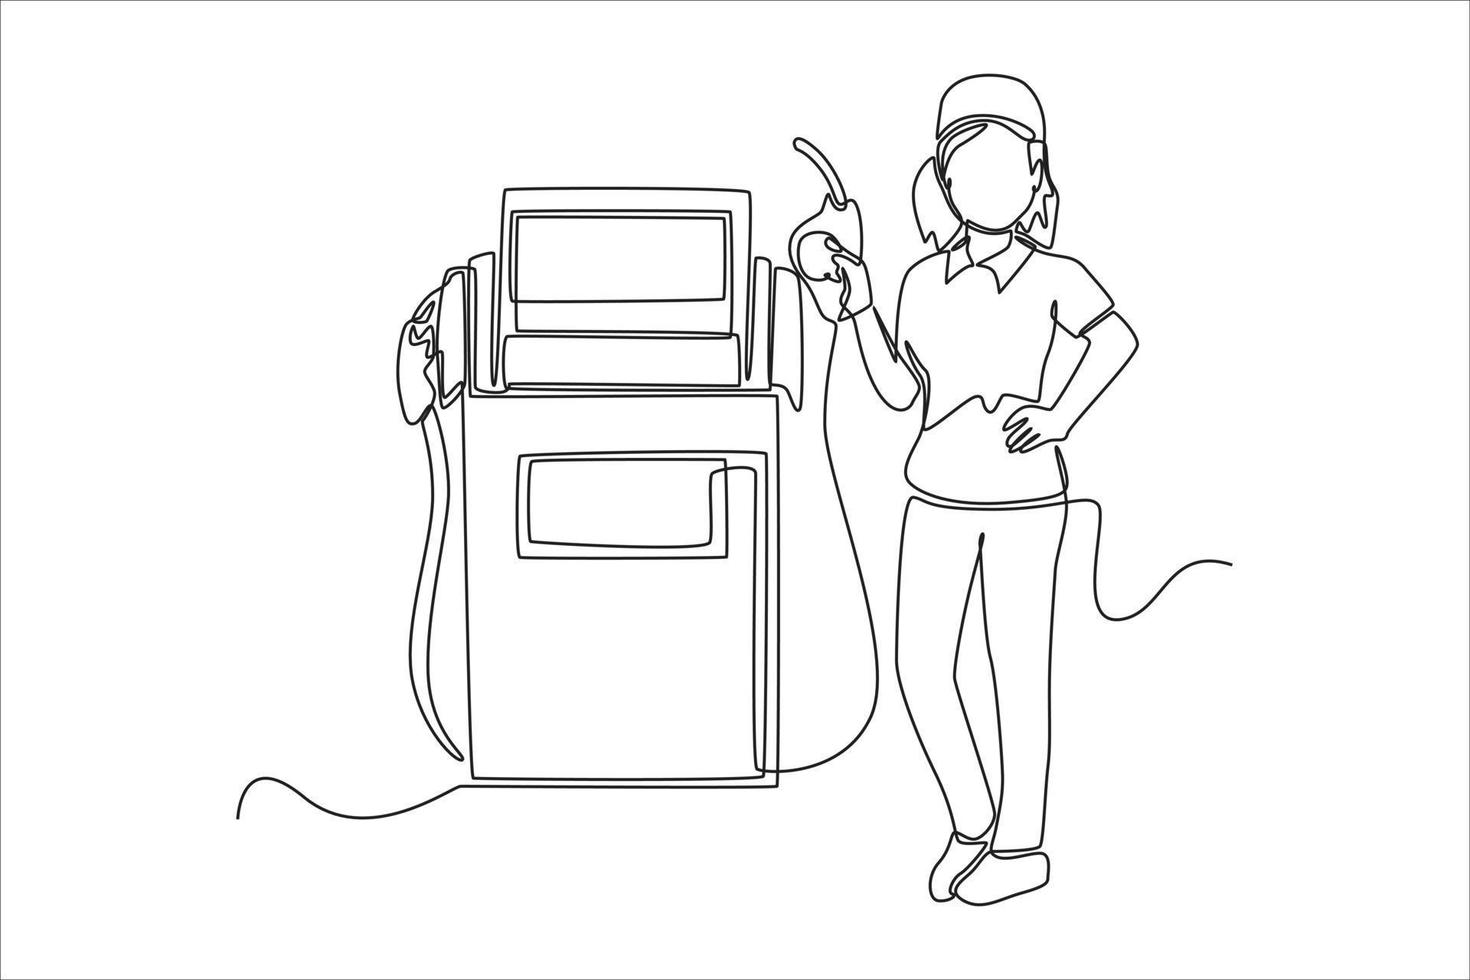 single een lijn tekening vrouw gas- station begeleider portie de bestuurder. gas- station concept doorlopend lijn trek ontwerp grafisch vector illustratie